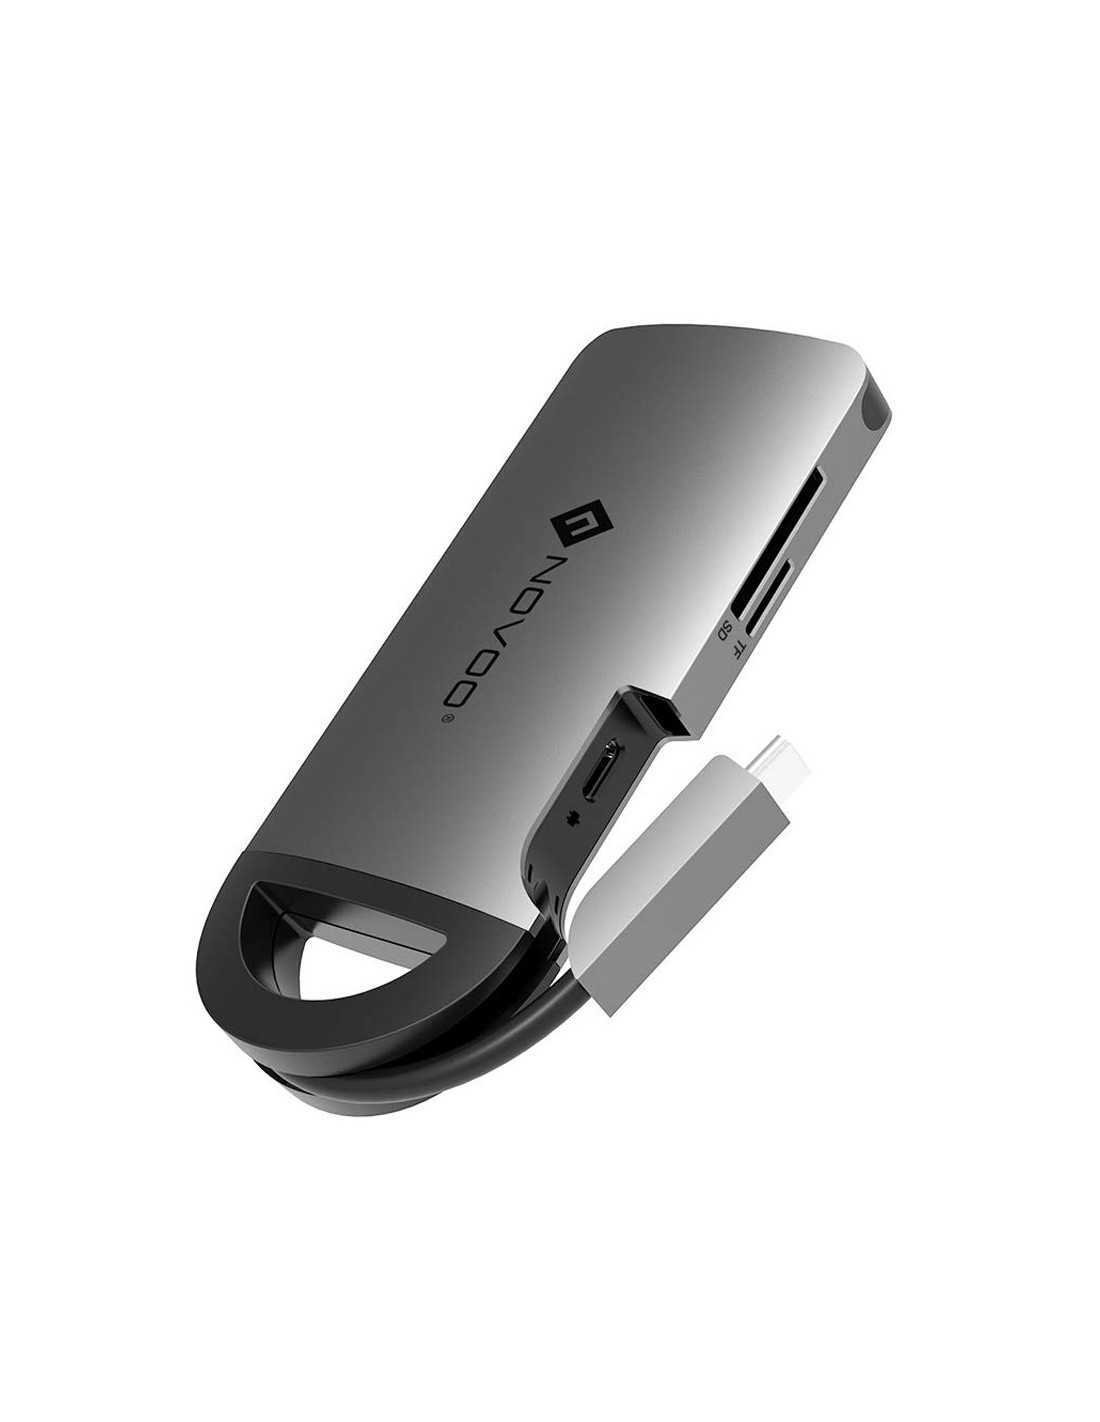 Hub 7 Ports Multiprise Chargeur Câble USB 3.0 pour Oodinateur PC MAC Windows